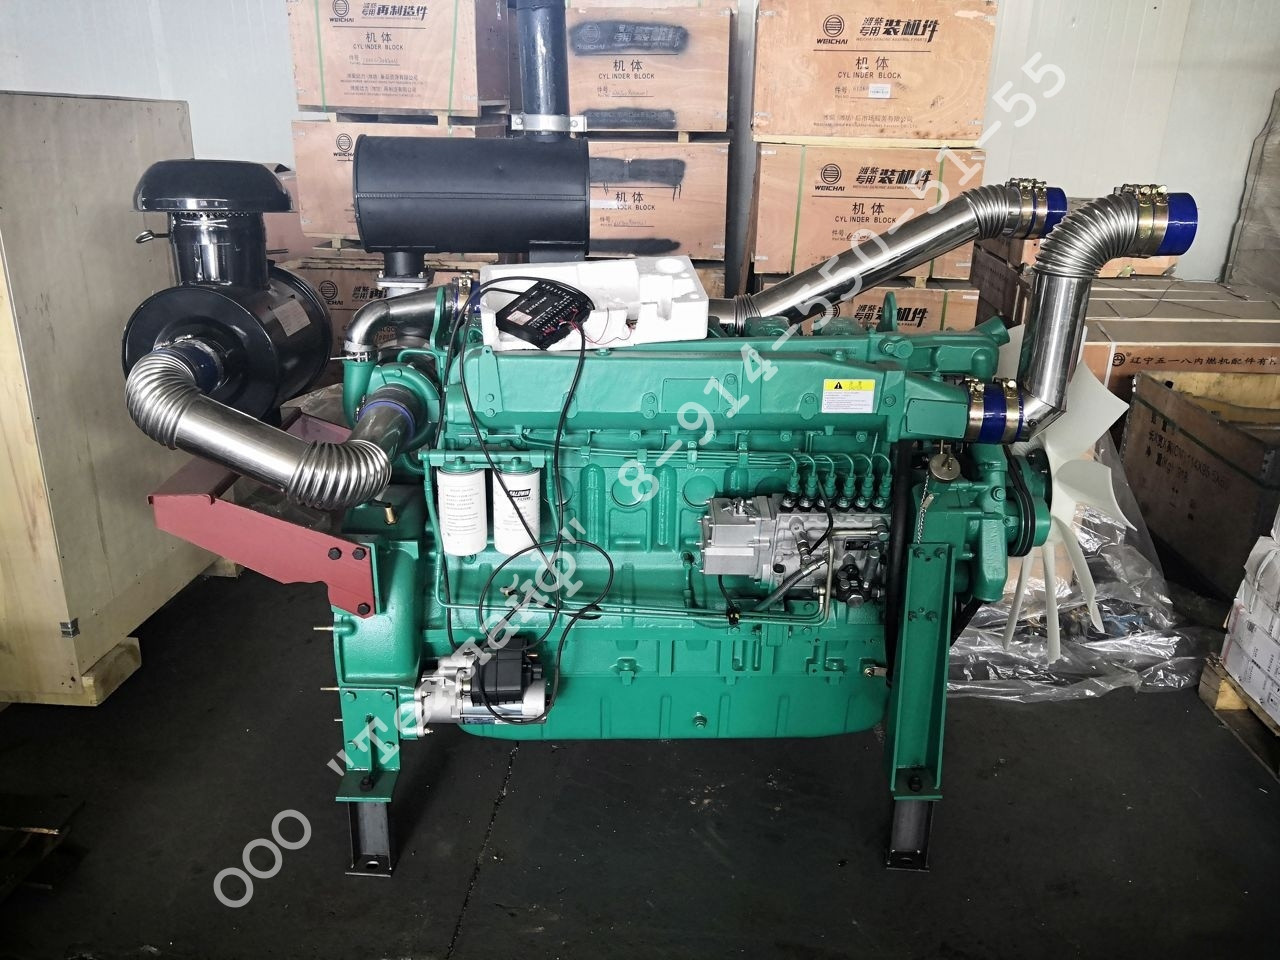 Двигатель Weichai WP12D317E200 для ДГУ (дизель-генераторной установки), 50 Гц